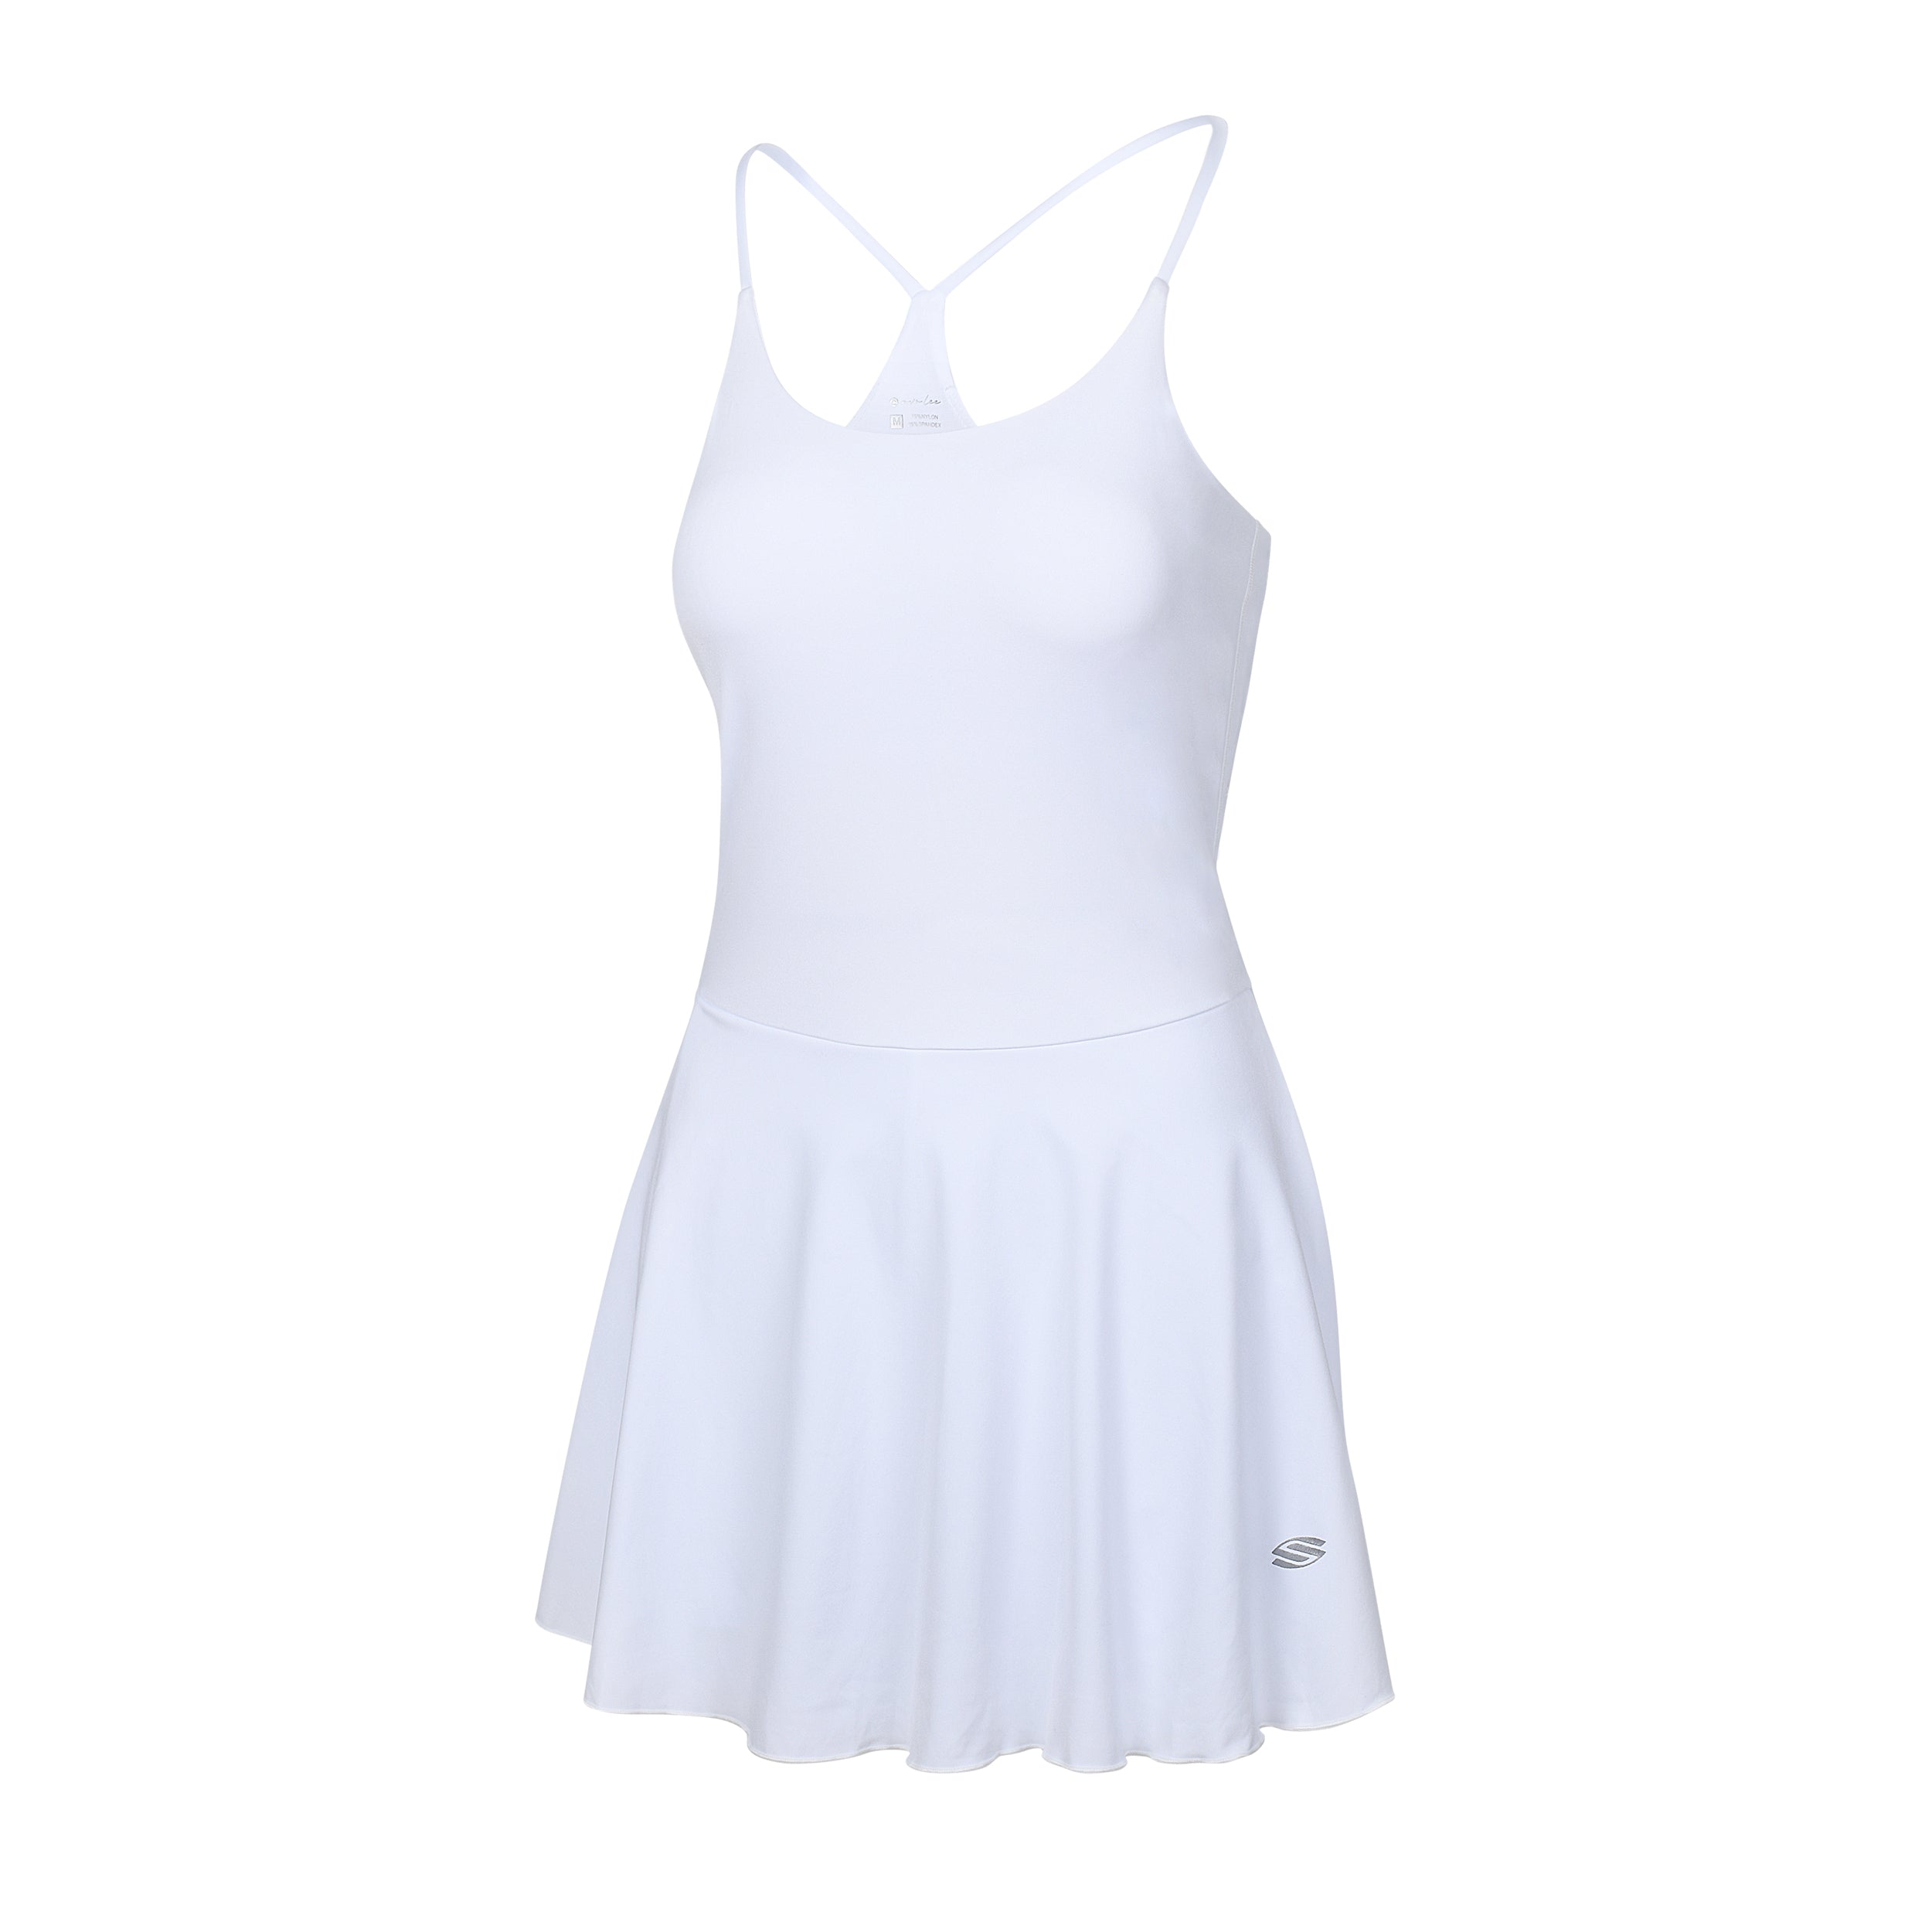 AvaLee by Selkirk Women's Single-Strap Court Dress | Selkirk Sport - We ...